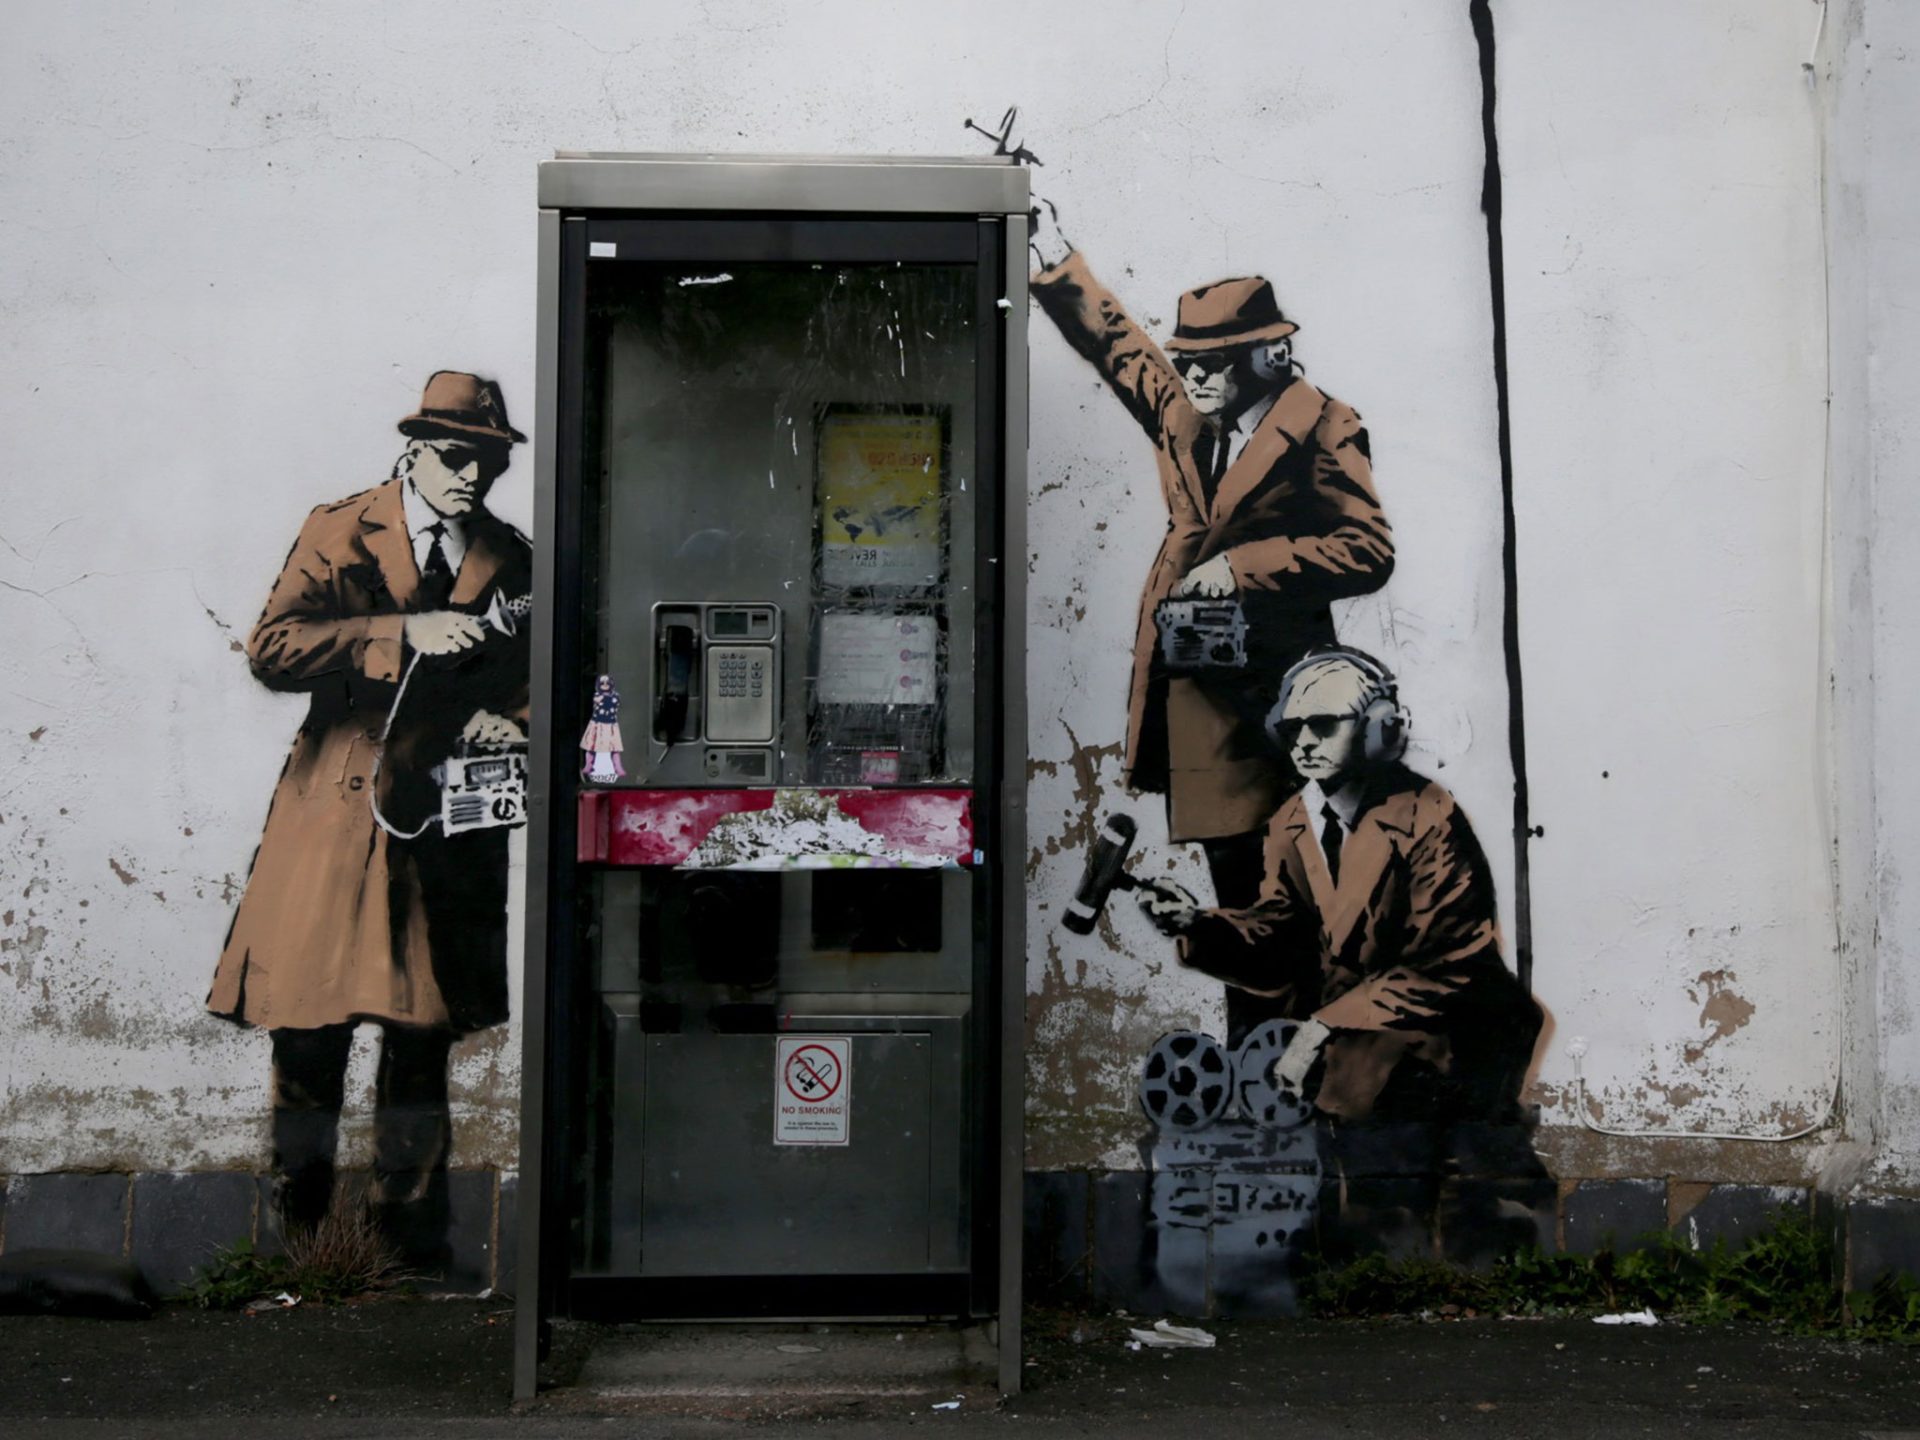 Mural de Banksy destruído